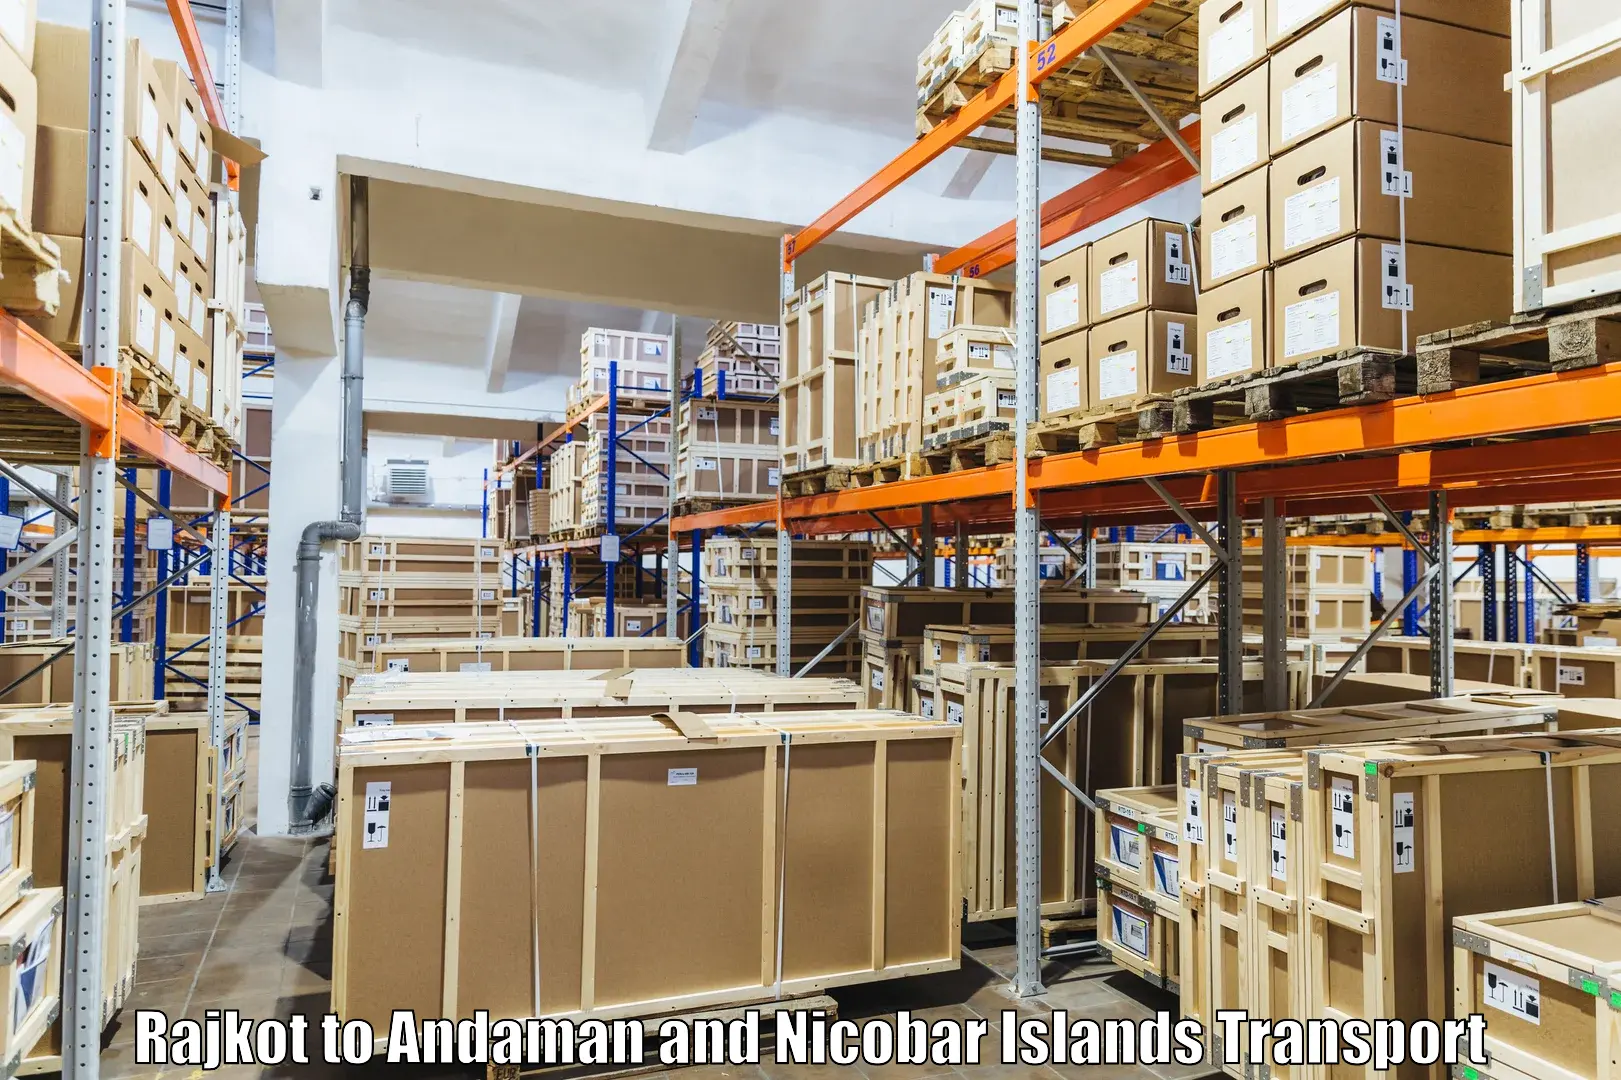 Furniture transport service Rajkot to Andaman and Nicobar Islands